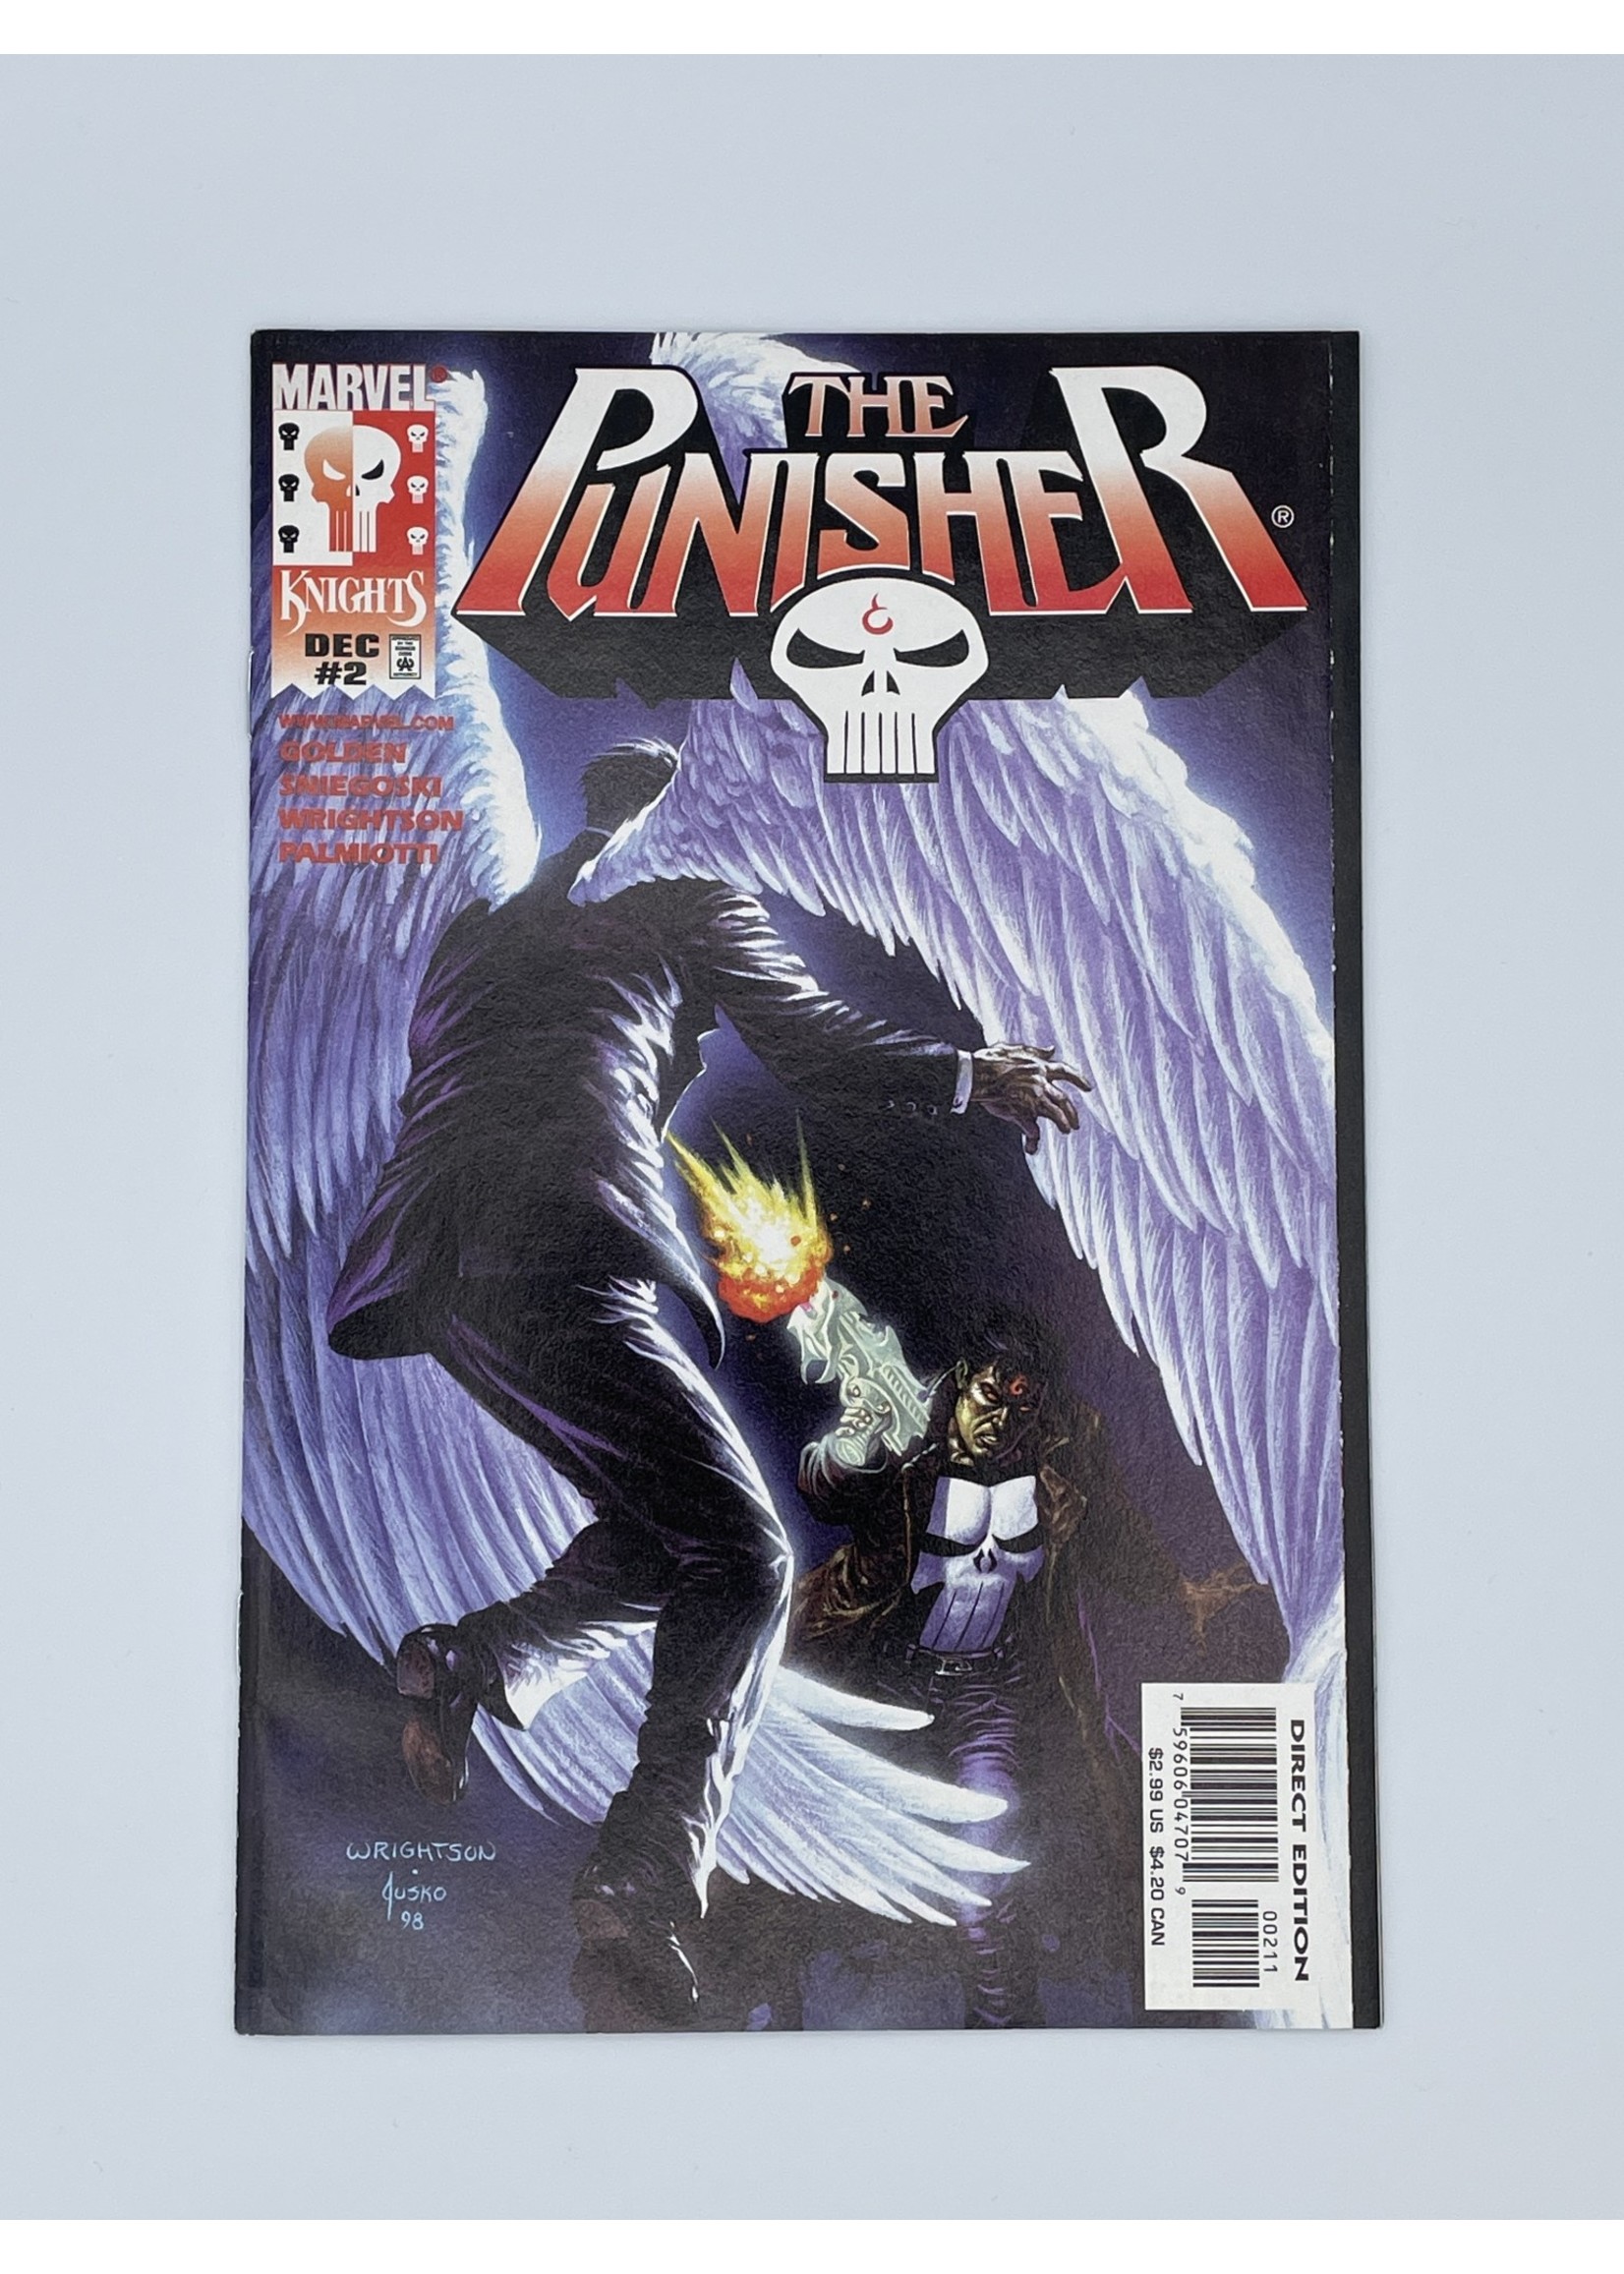 Marvel The Punisher #2 Marvel December 1998